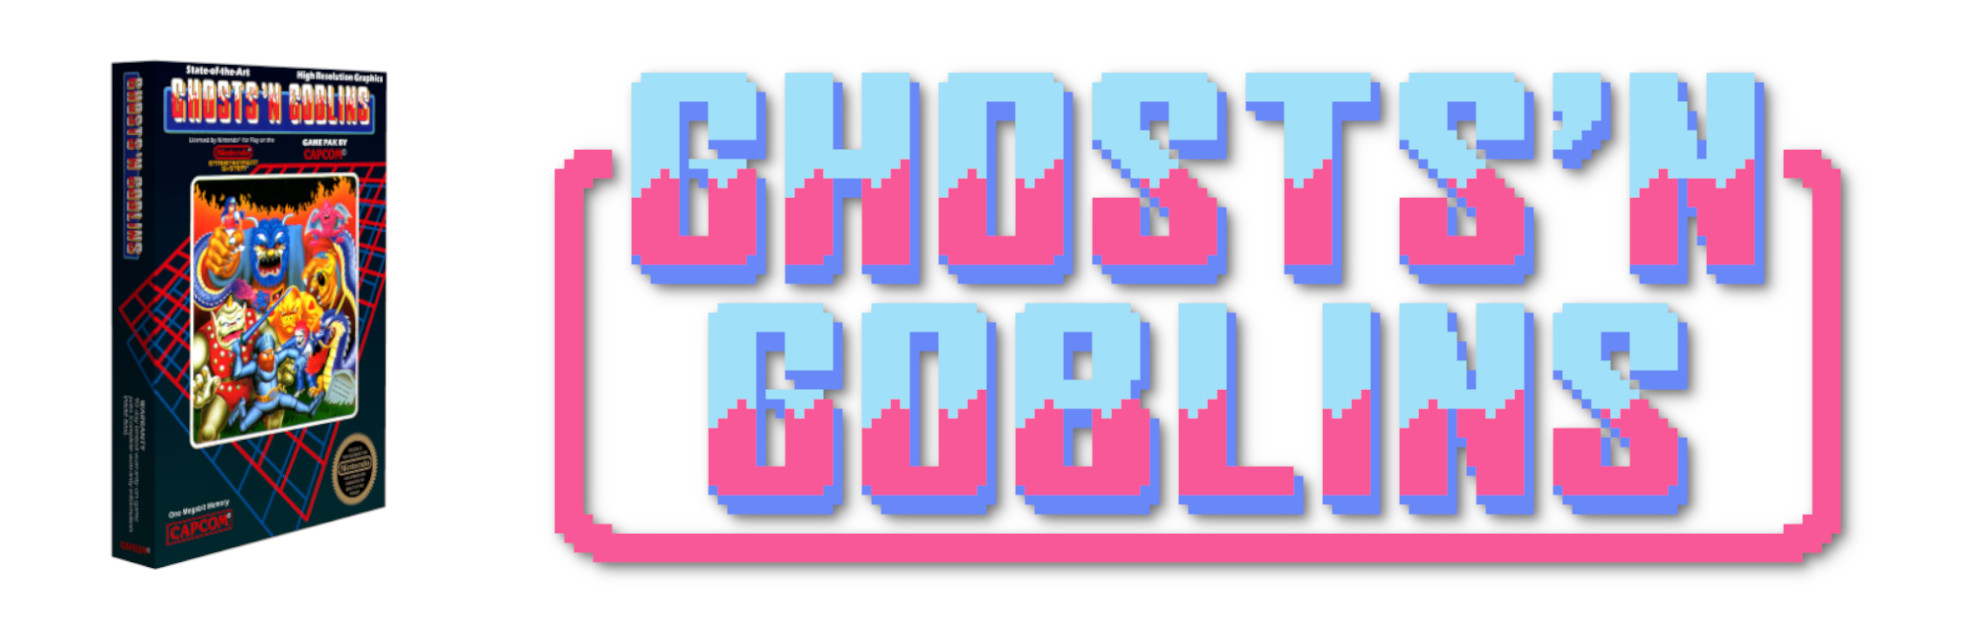 Ghosts'n Goblins Makaimura Ghouls'n Ghosts